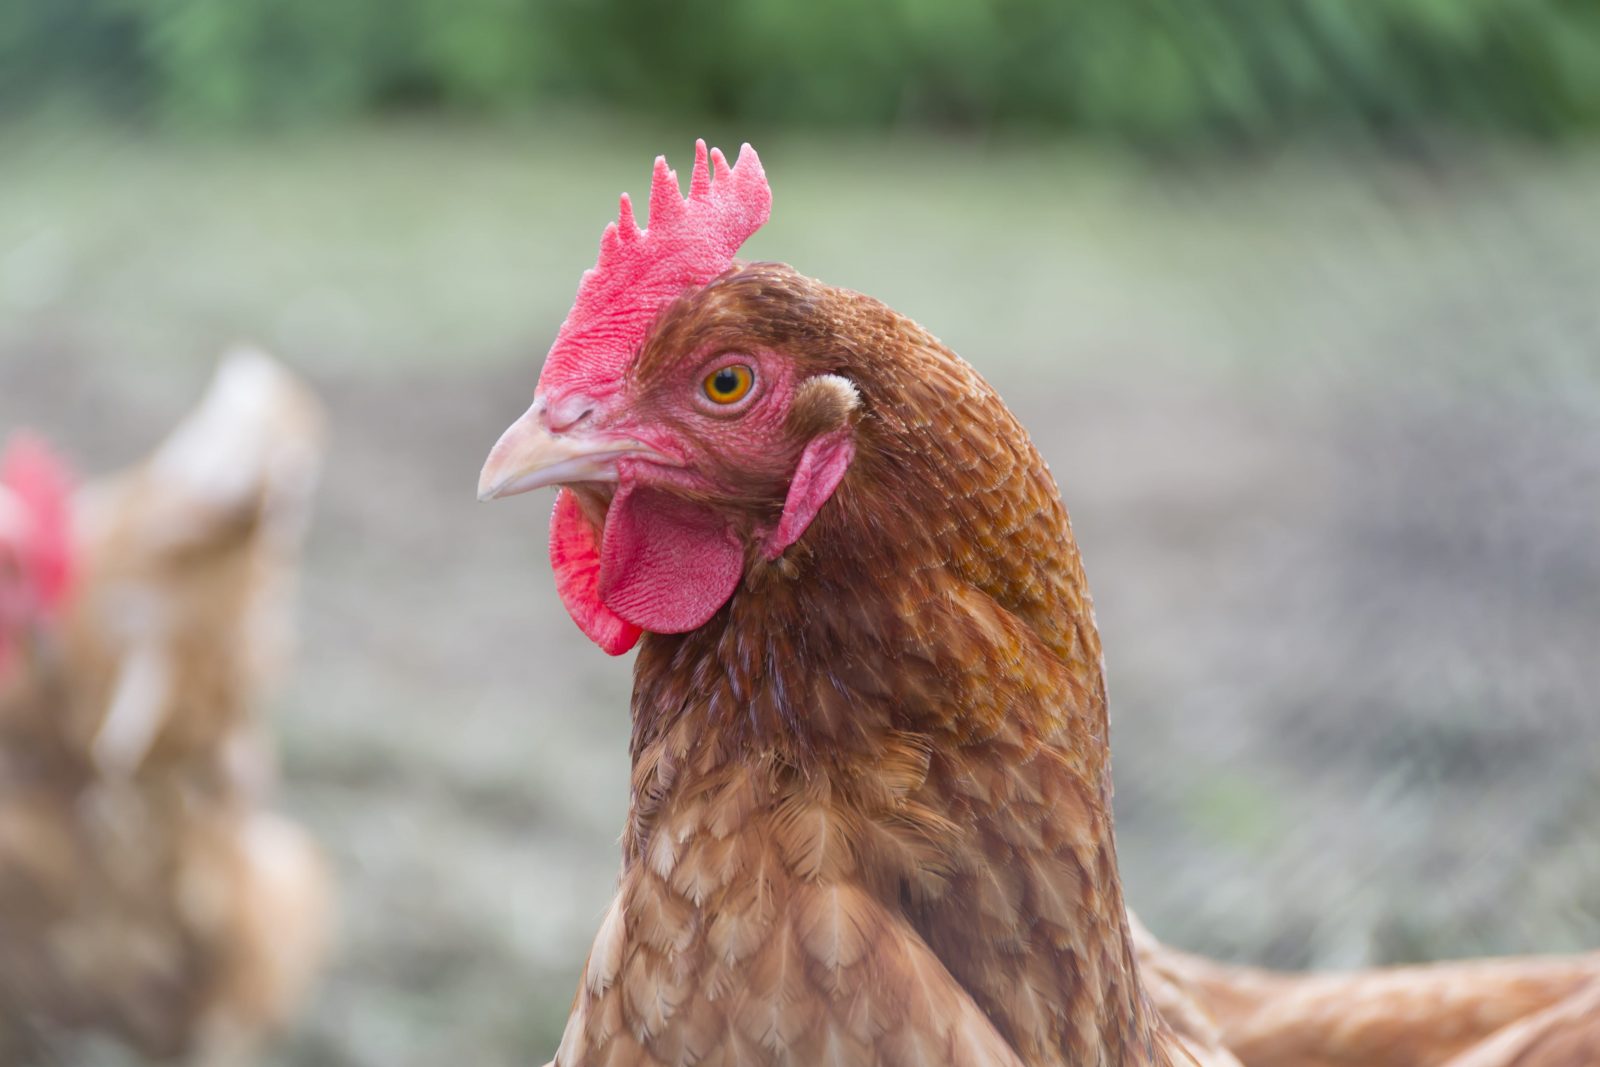 L’assemblée de Verchères en bref: une bonne nouvelle pour ceux qui désirent avoir des poules urbaines